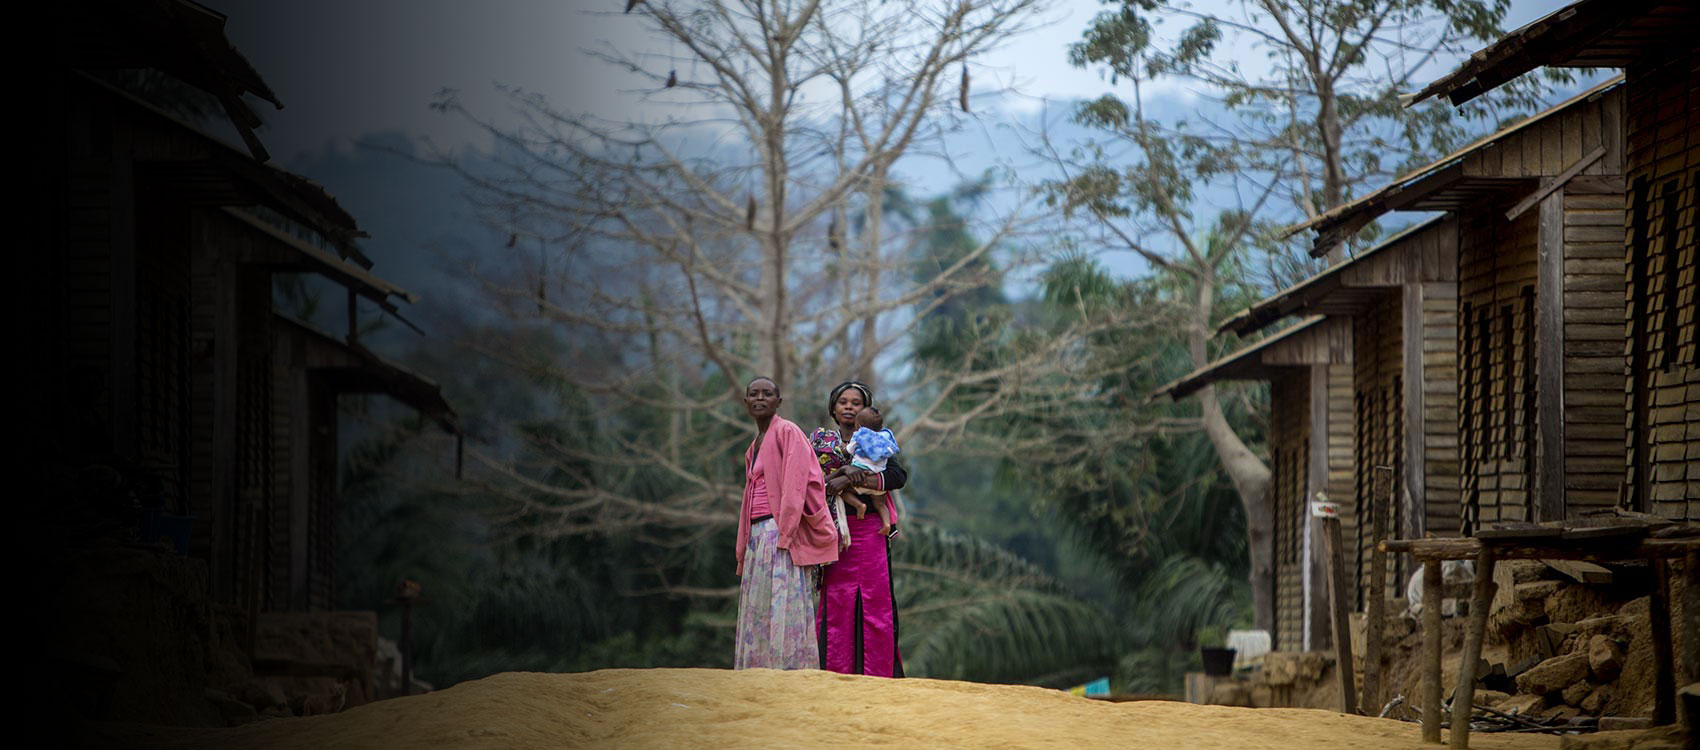 GAVI/2013/Evelyn Hockstein/Congo DRC